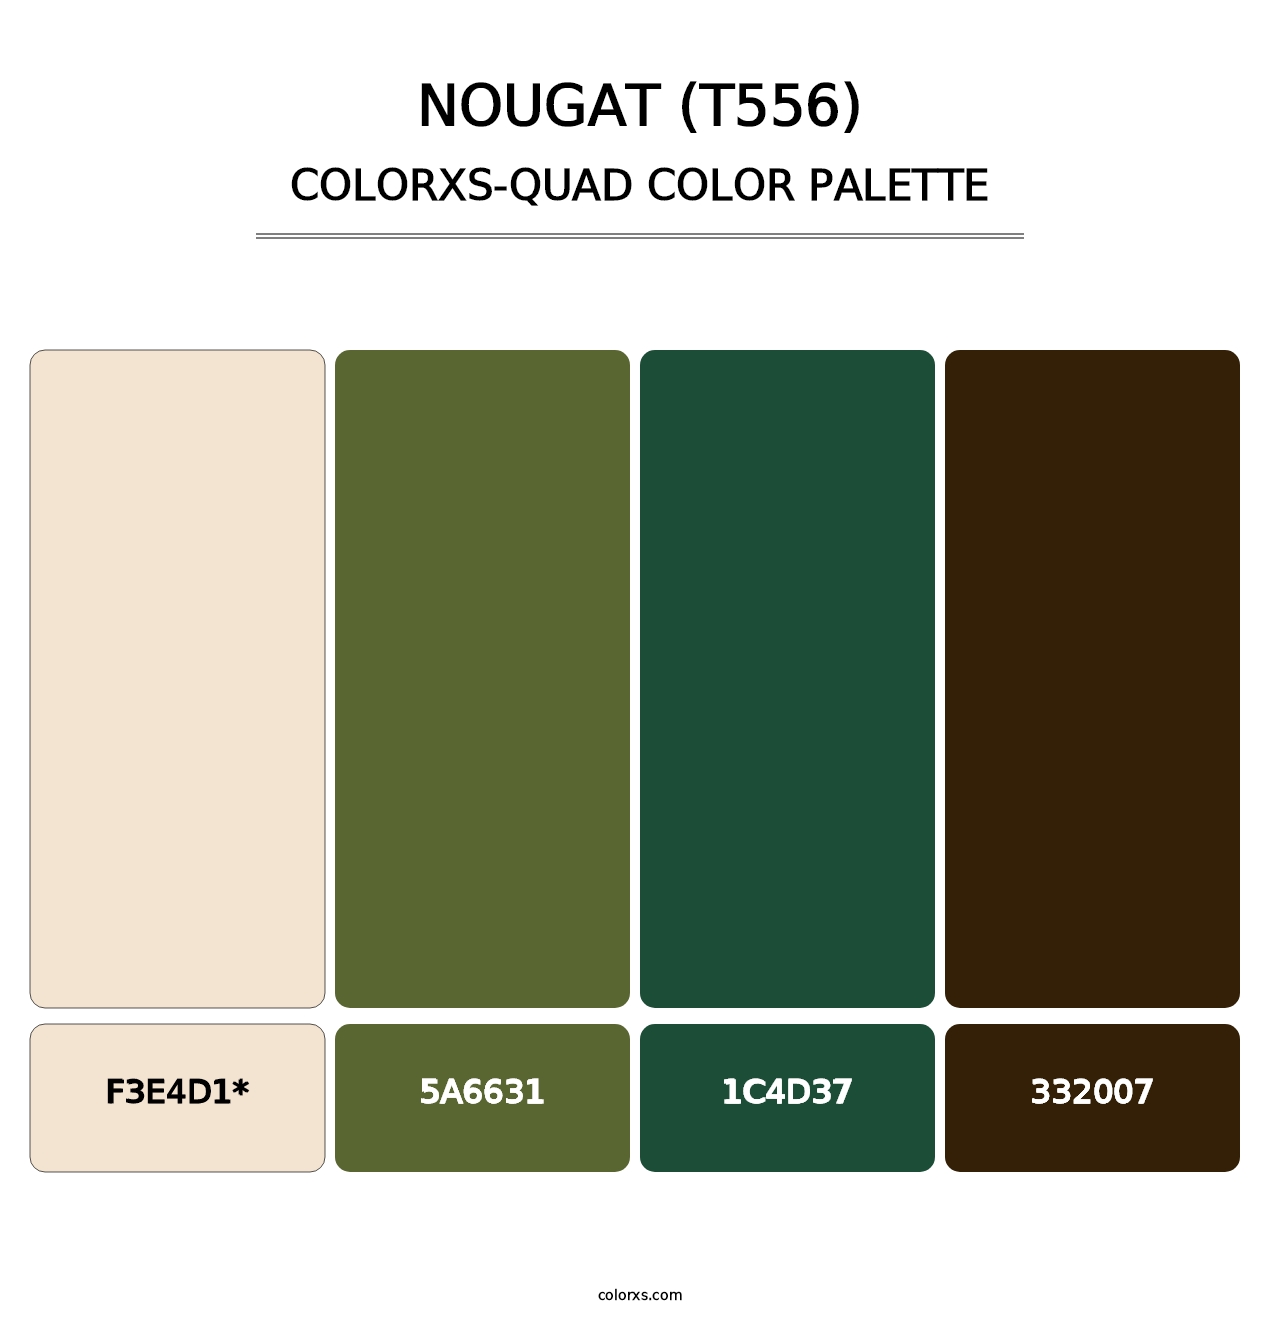 Nougat (T556) - Colorxs Quad Palette